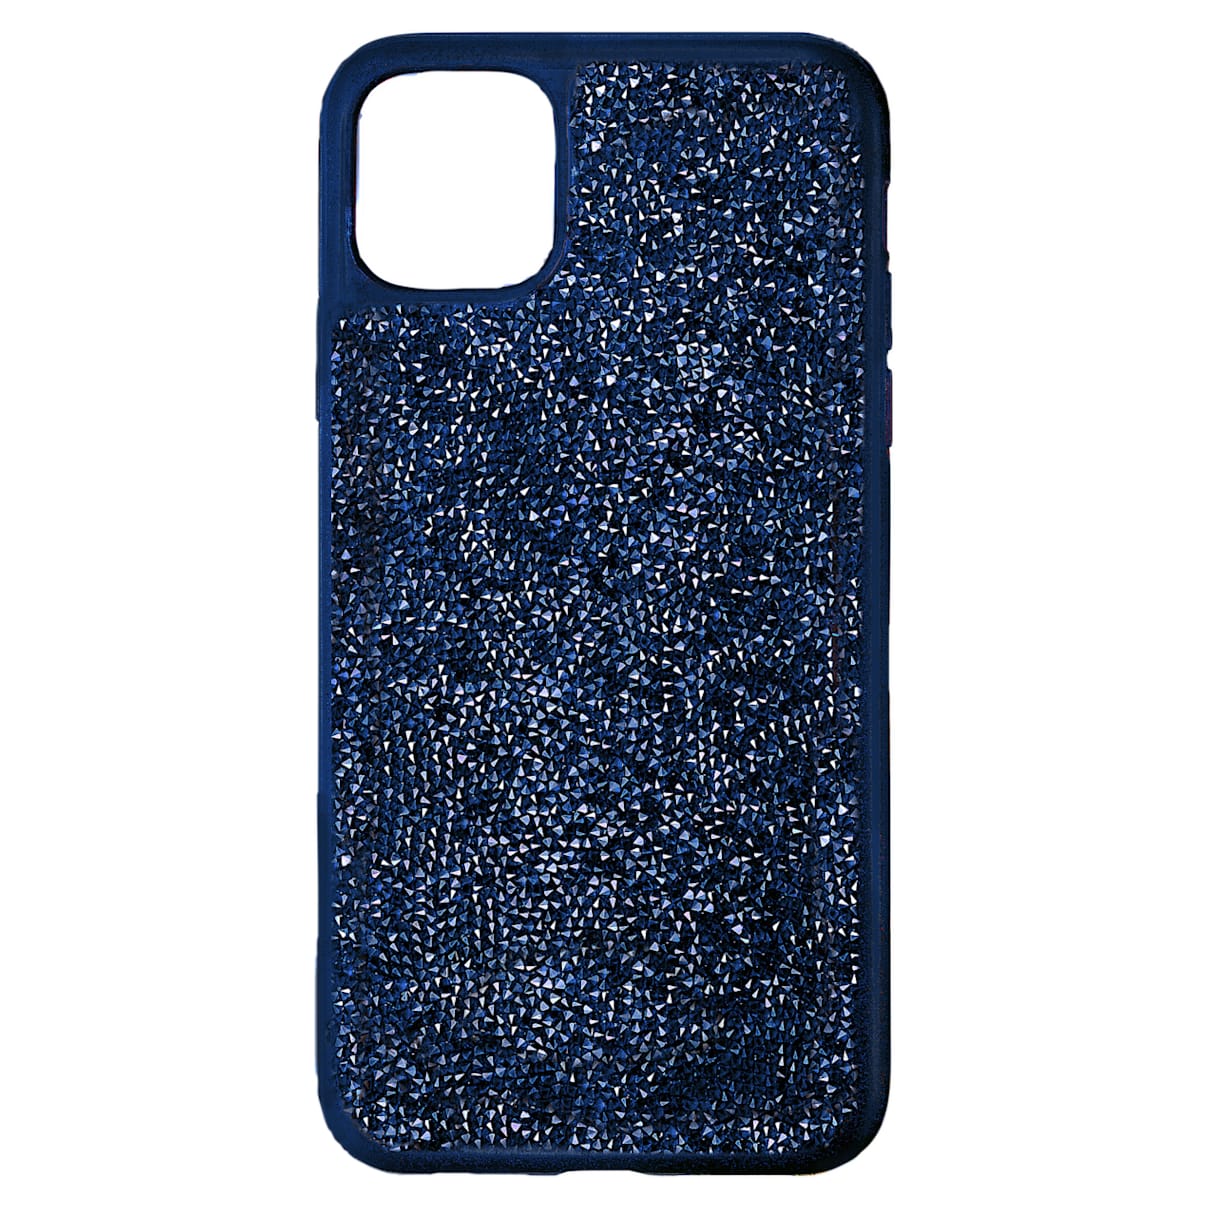 Custodia per smartphone con bordi protettivi Glam Rock, iPhone® 12/12 Pro, blu